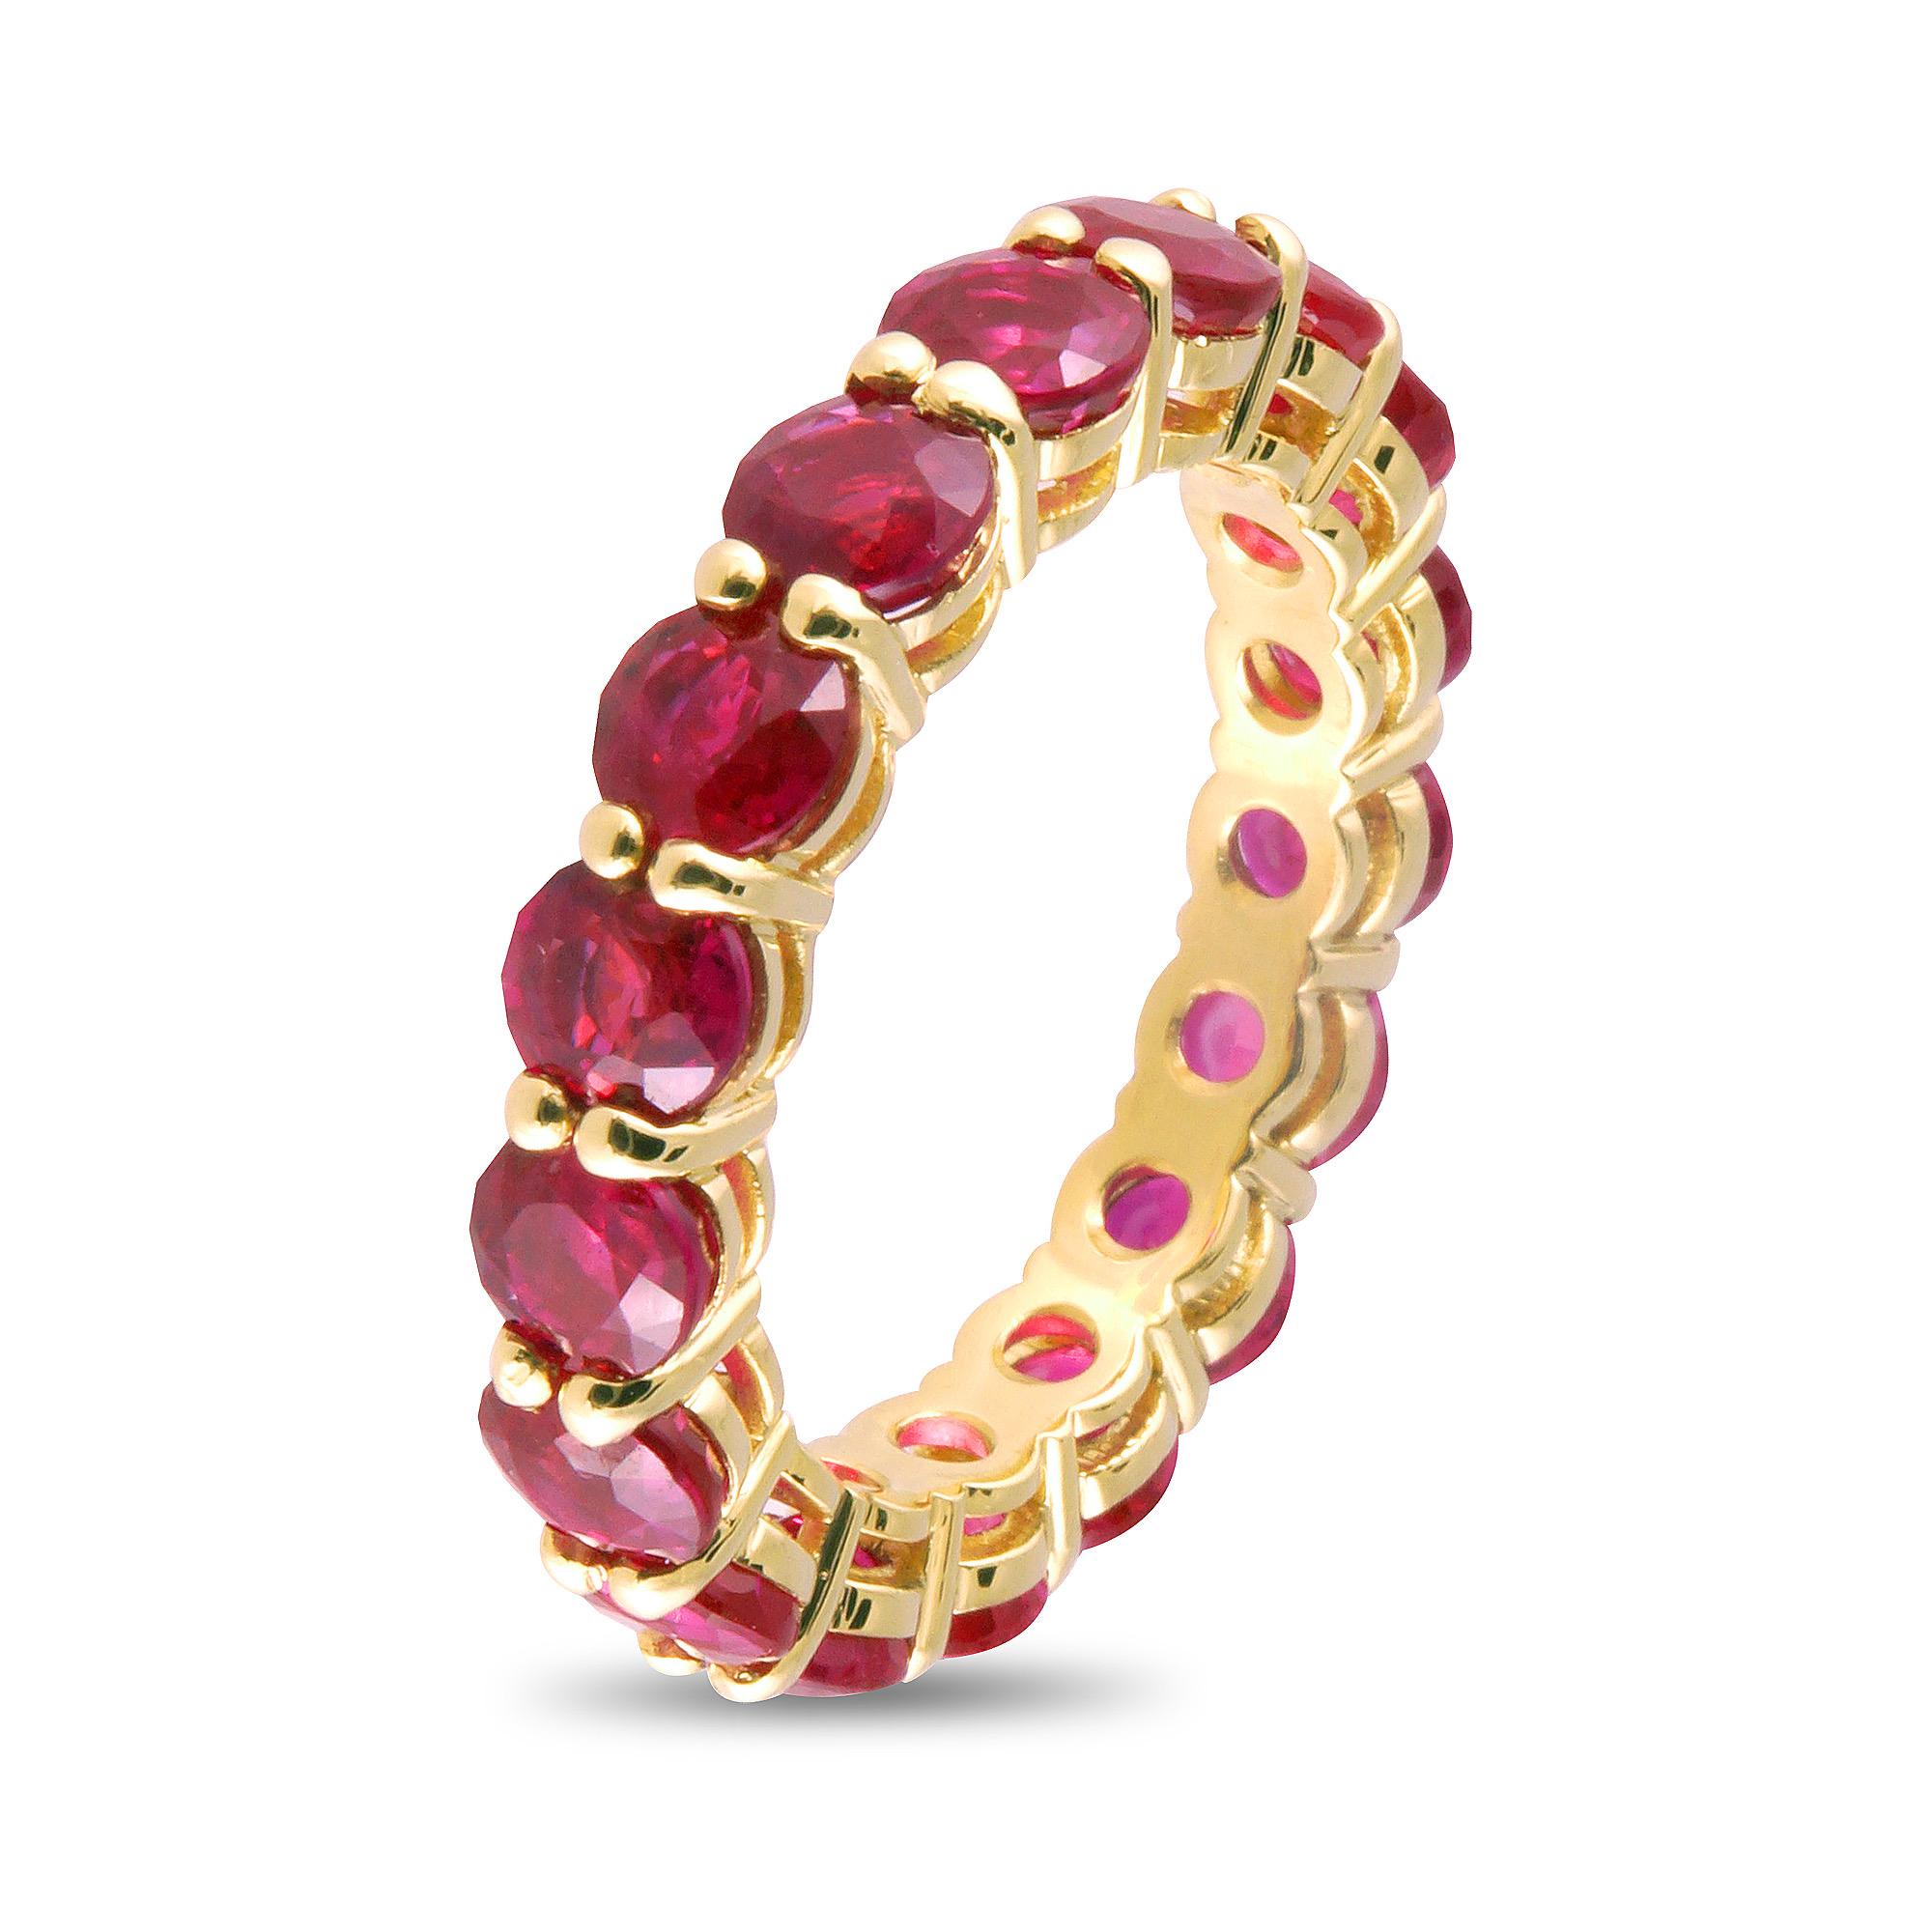 Le rubis étant l'une des pierres précieuses les plus populaires et les plus traditionnelles en joaillerie, cet anneau éternel en rubis de 6,14 carats est l'ajout parfait pour donner une touche de couleur à toute bague. Cadeau idéal à offrir à votre